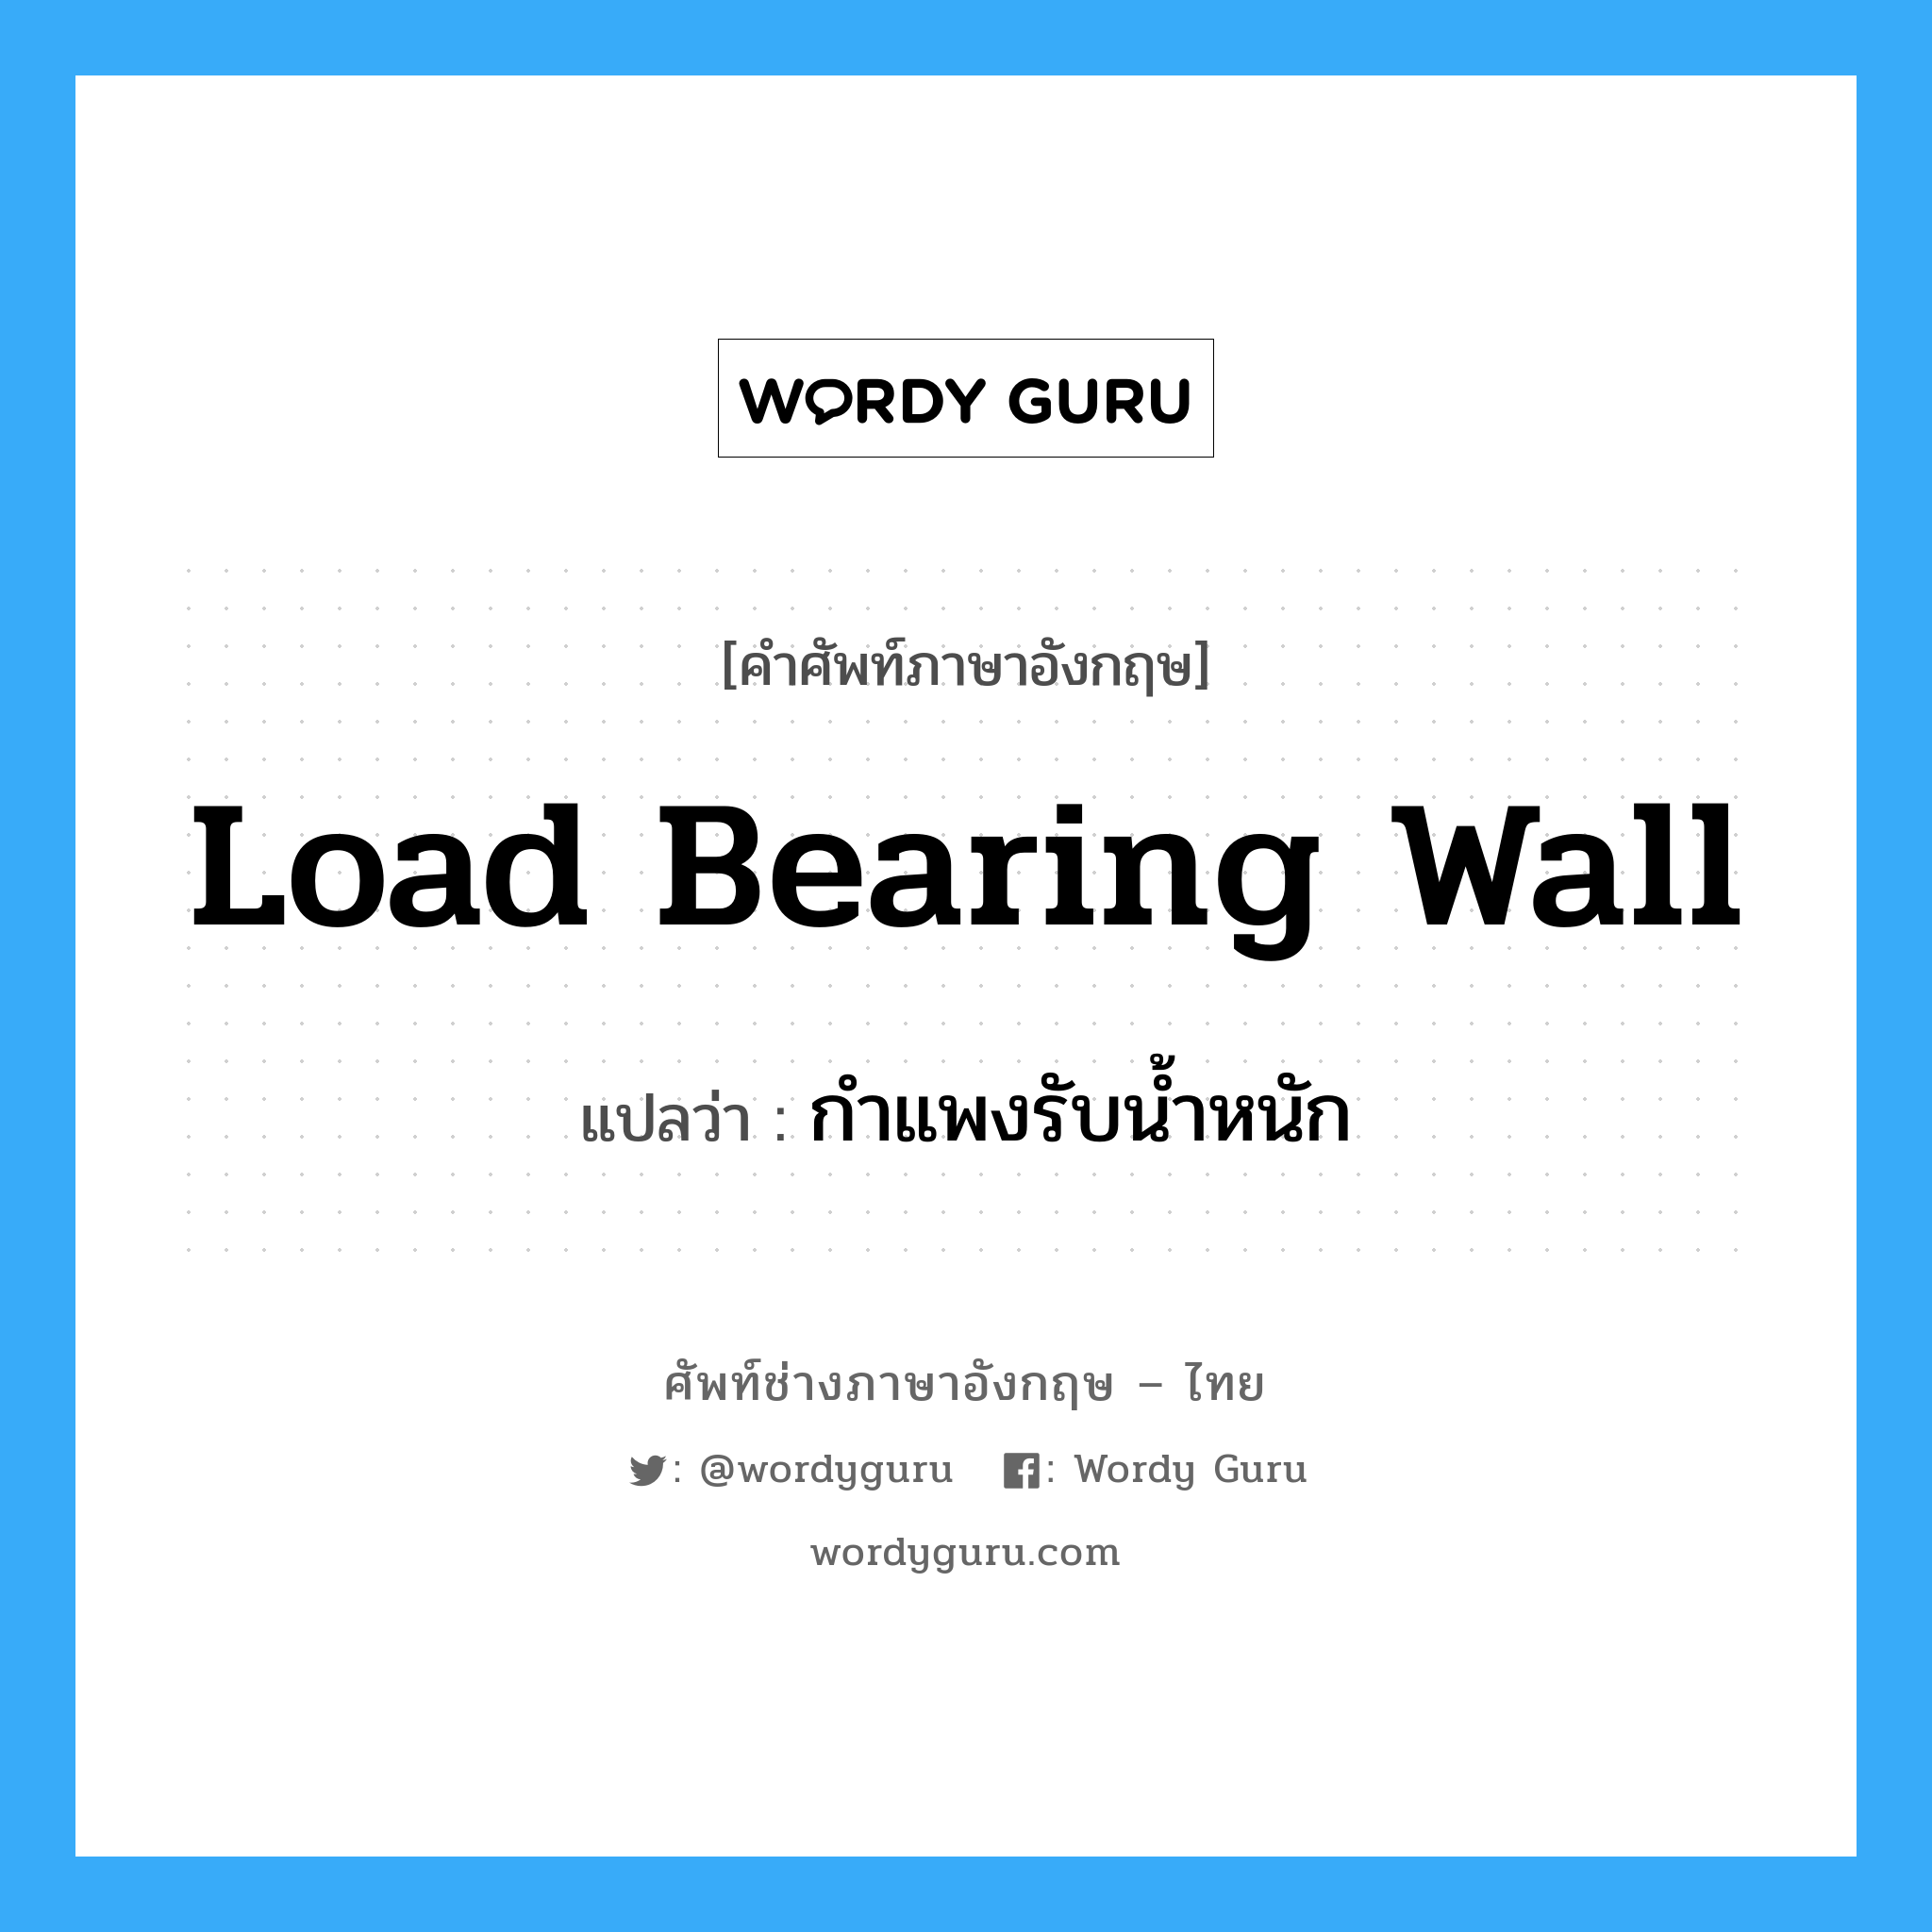 กำแพงรับน้ำหนัก ภาษาอังกฤษ?, คำศัพท์ช่างภาษาอังกฤษ - ไทย กำแพงรับน้ำหนัก คำศัพท์ภาษาอังกฤษ กำแพงรับน้ำหนัก แปลว่า load bearing wall